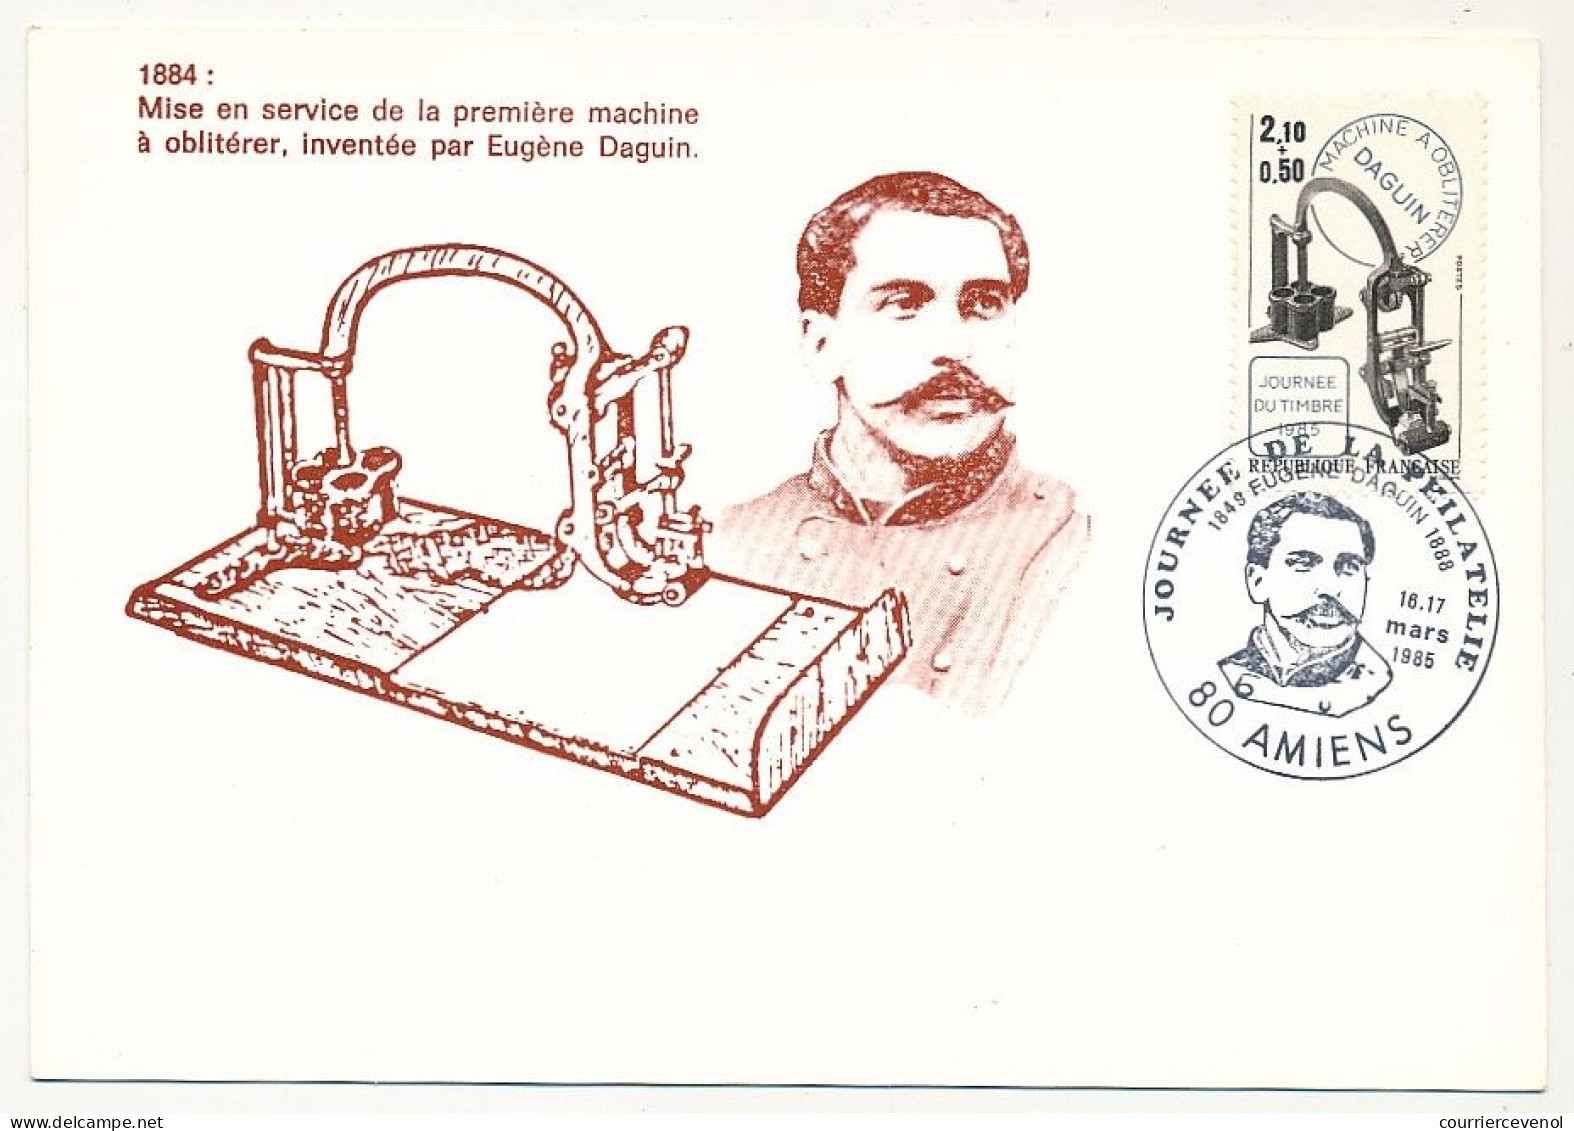 FRANCE => 80 - AMIENS - Carte Maximum "Journée De La Philatélie" 16/17 Mars 1985 - 2,10 + 0,50 Machine Daguin - Covers & Documents